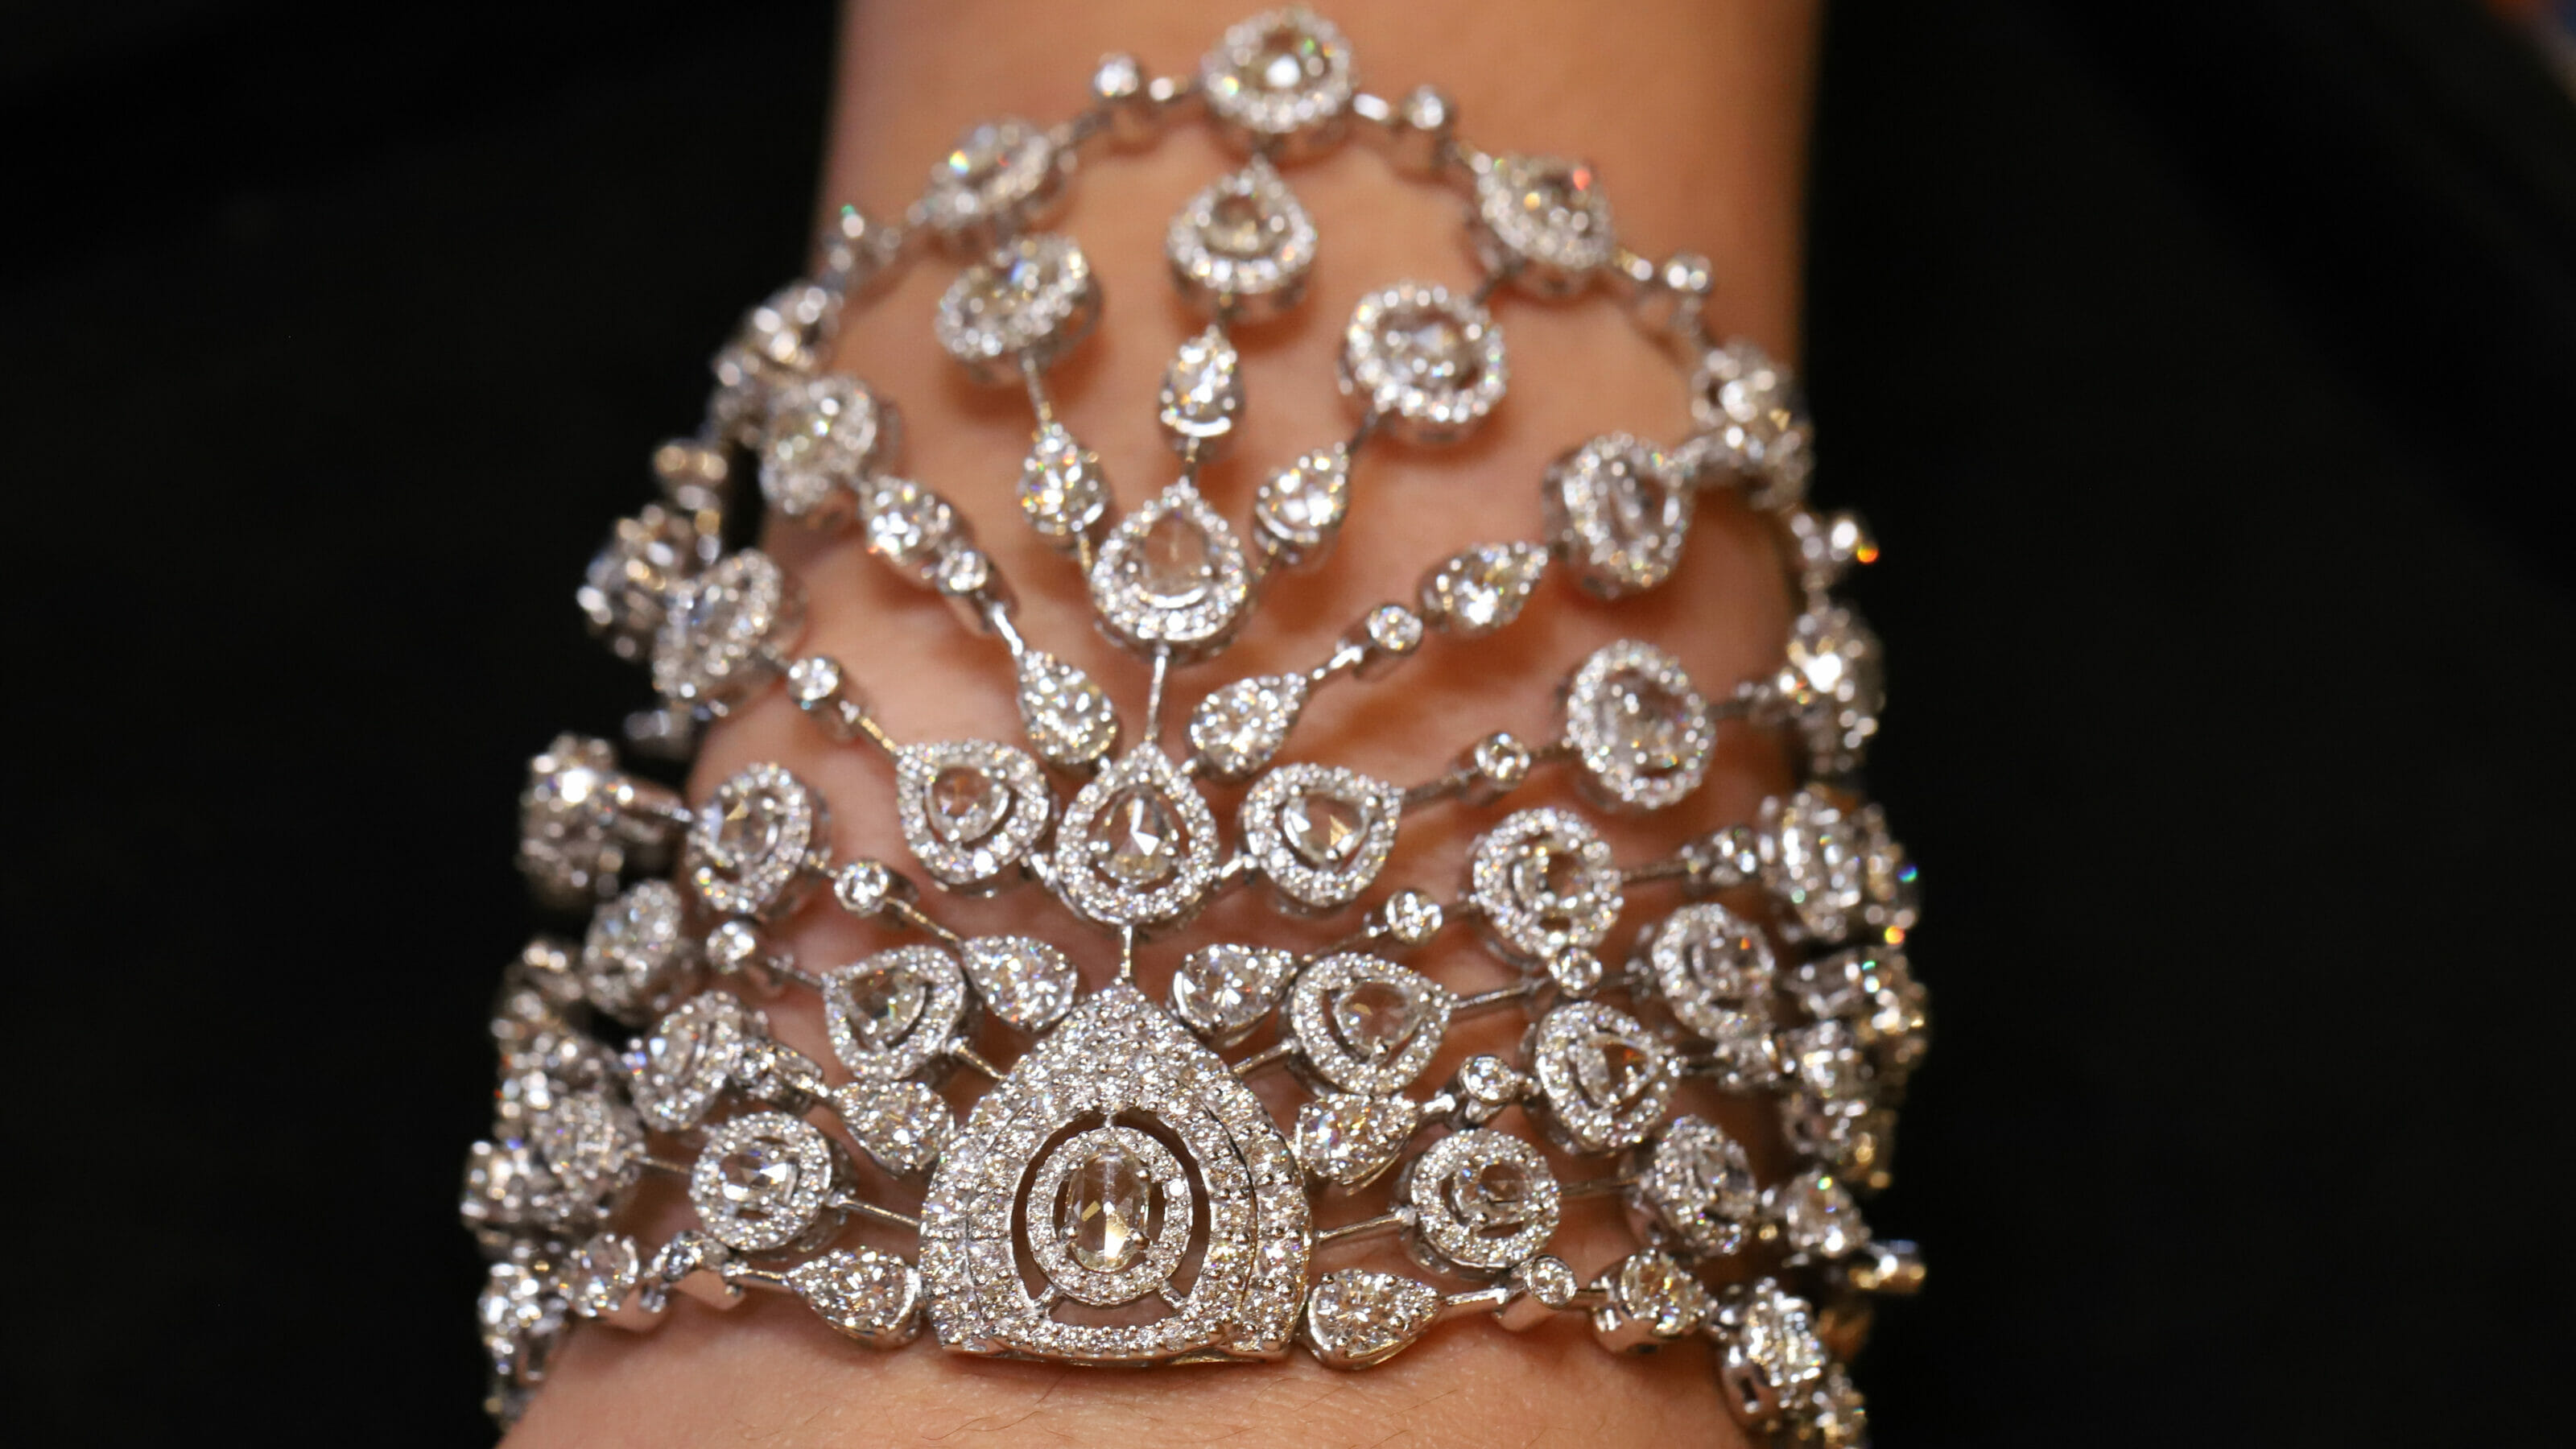 Buy 1200+ Designs Online   - India's #1 Online Jewellery Brand